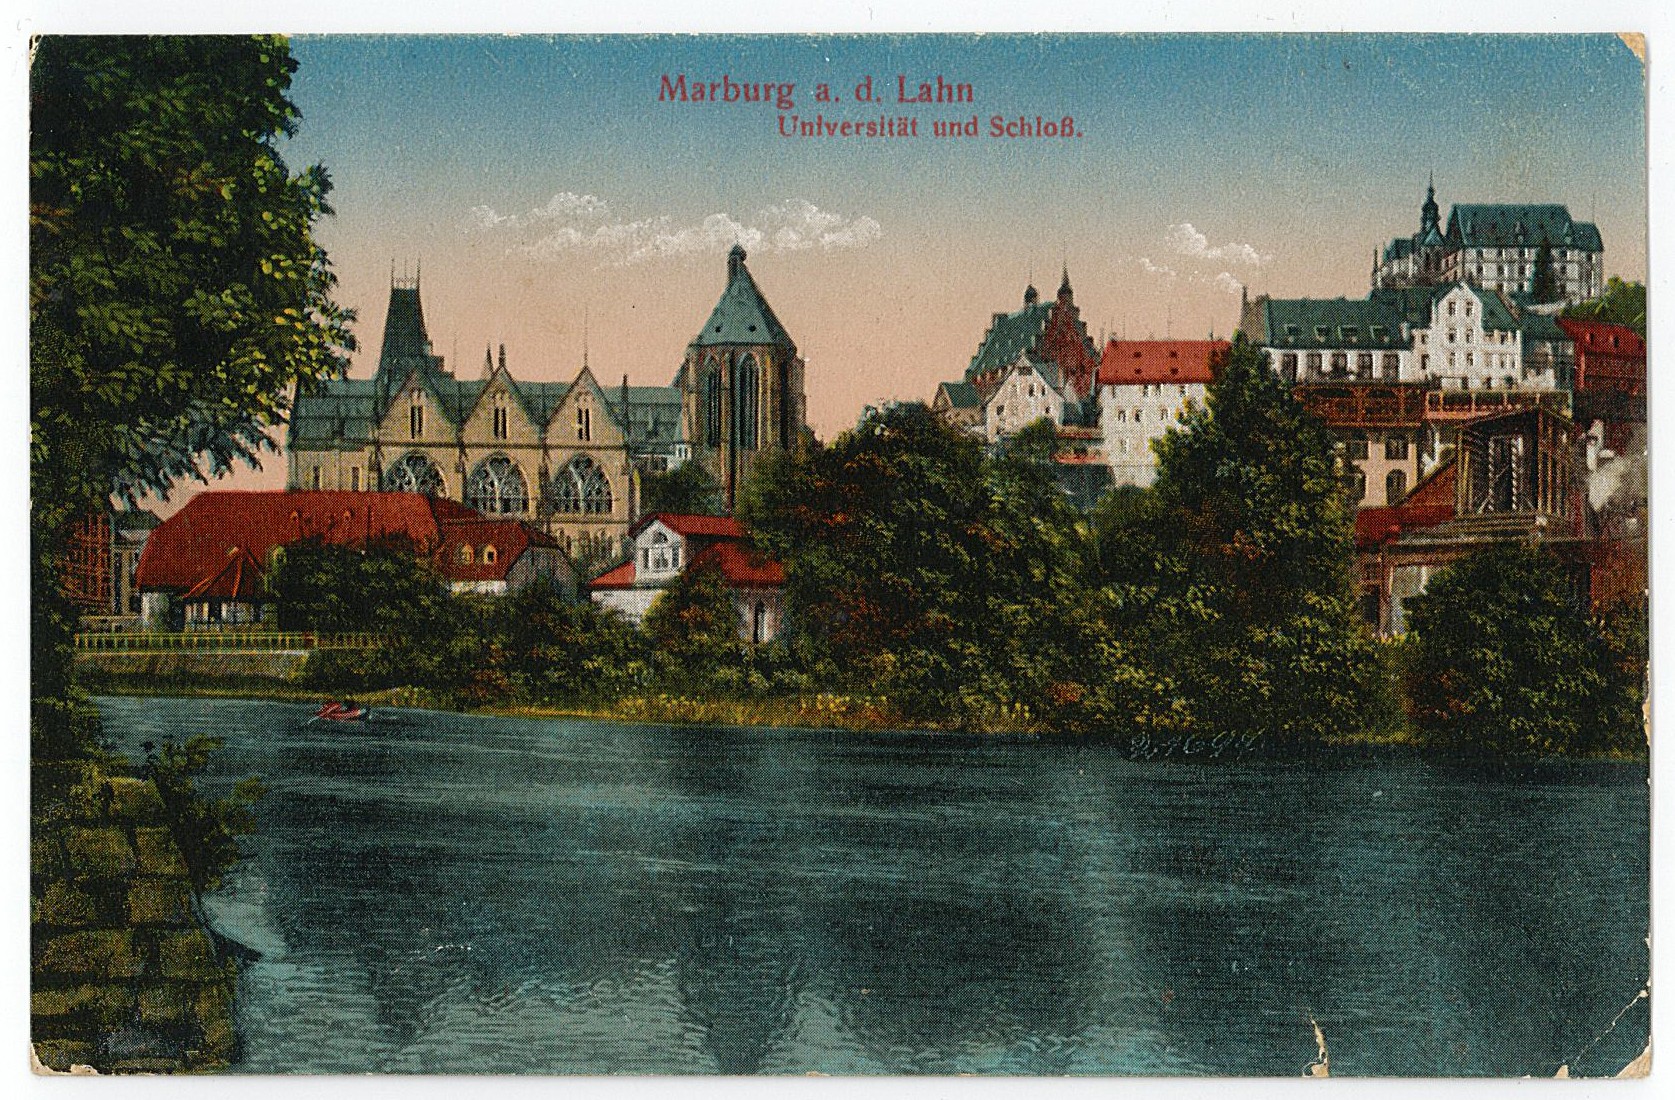 Postkarte von Erich Otto an seinen Vater Hermann Otto, 21.09.1917 (2) (Museum Wolmirstedt RR-F)